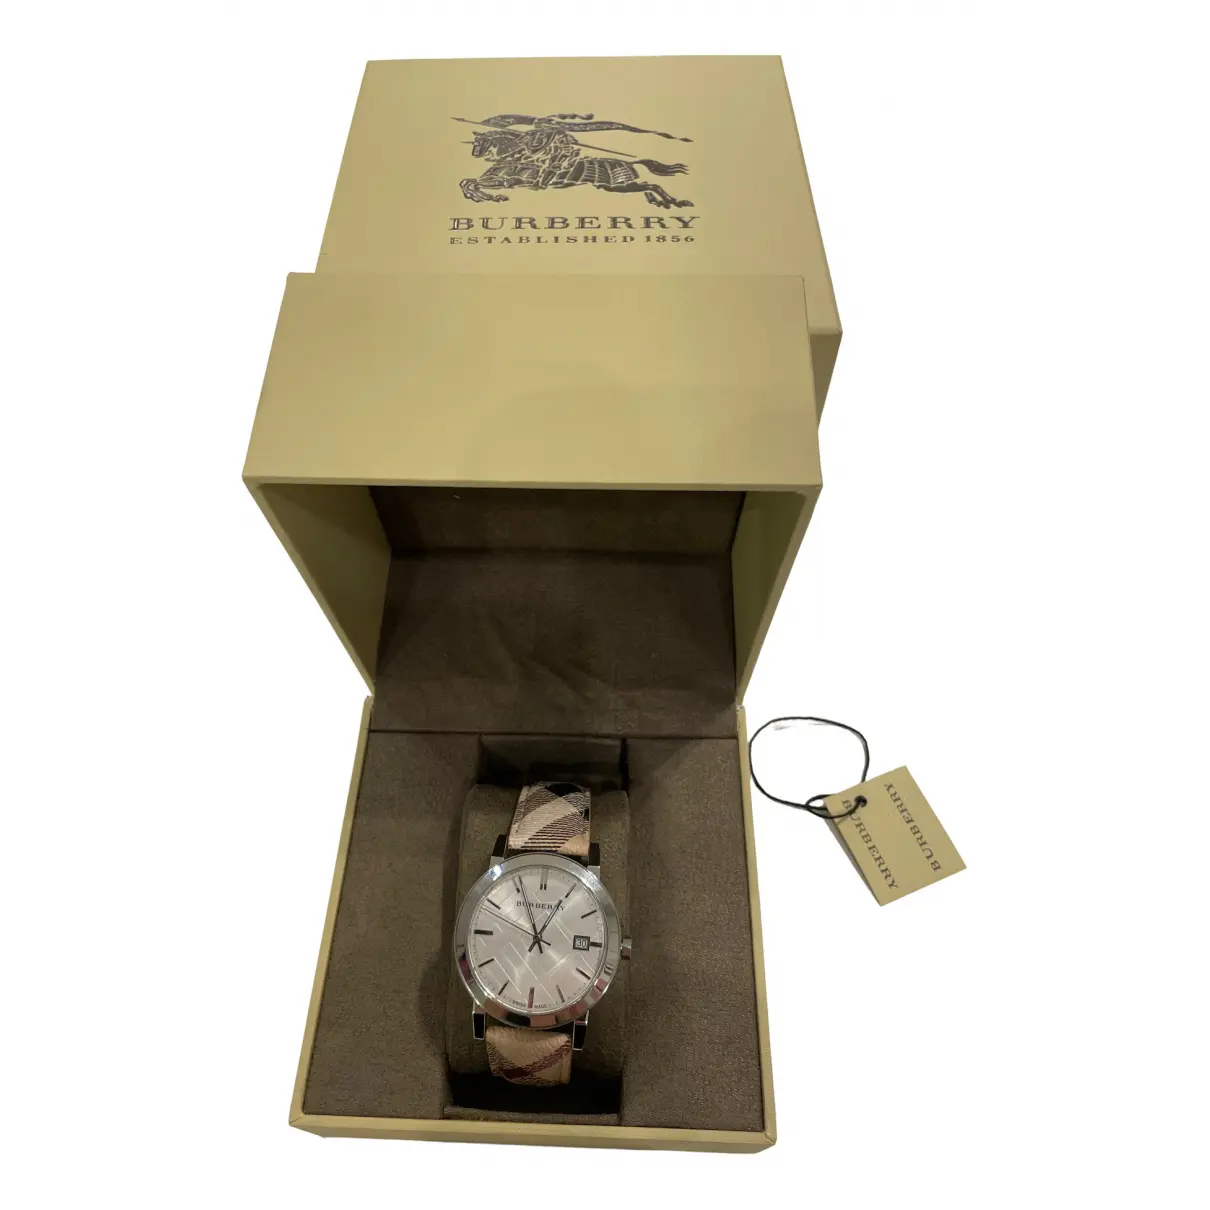 Buy Burberry Watch online